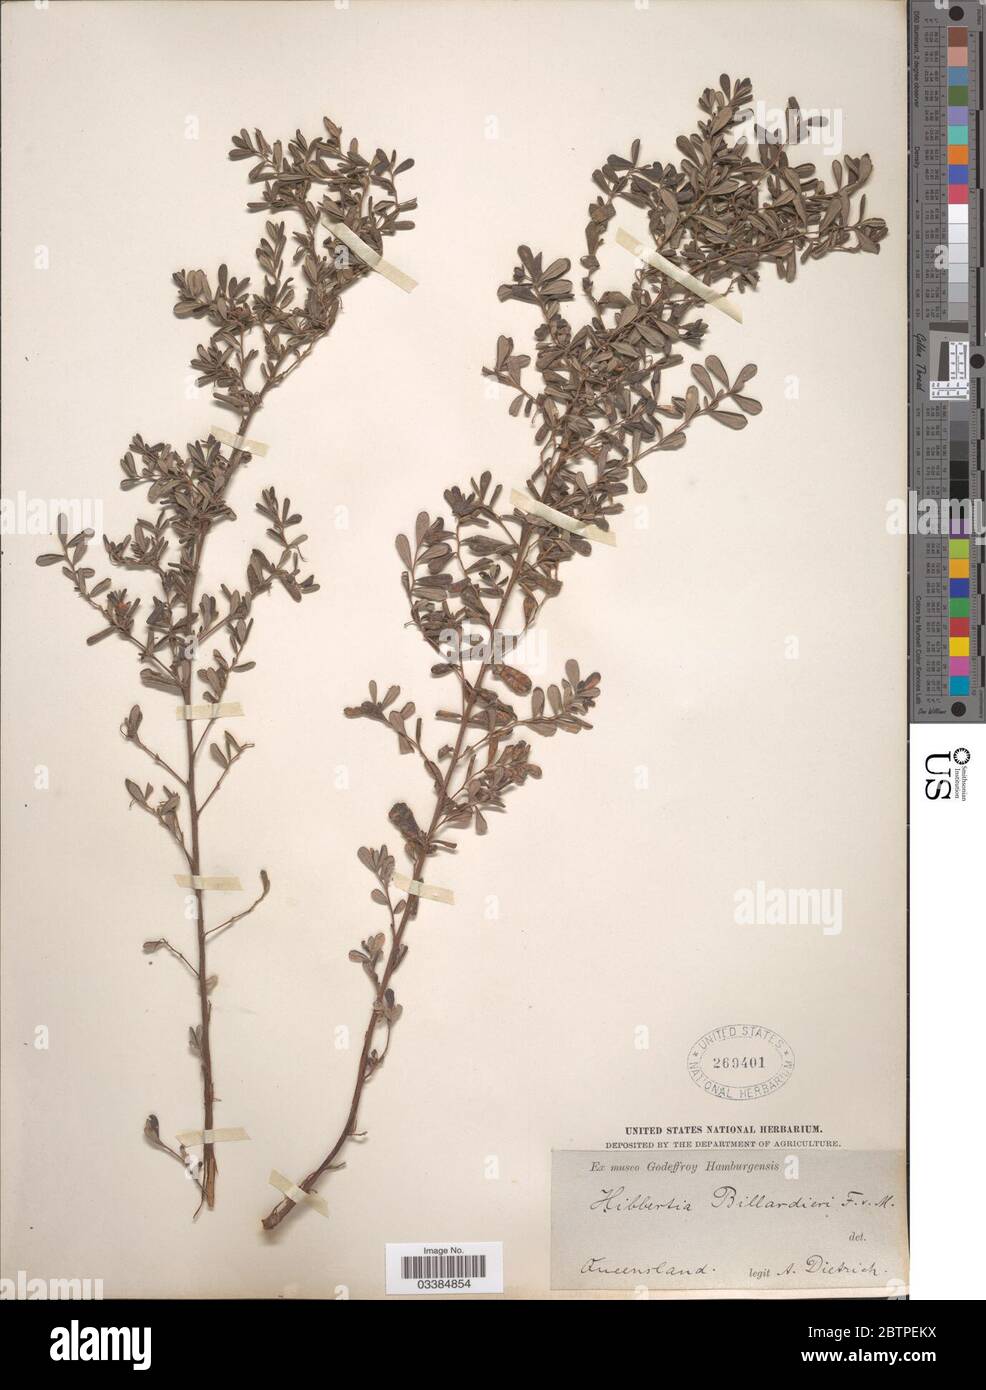 Hibbertia billardierei F Muell. Stock Photo